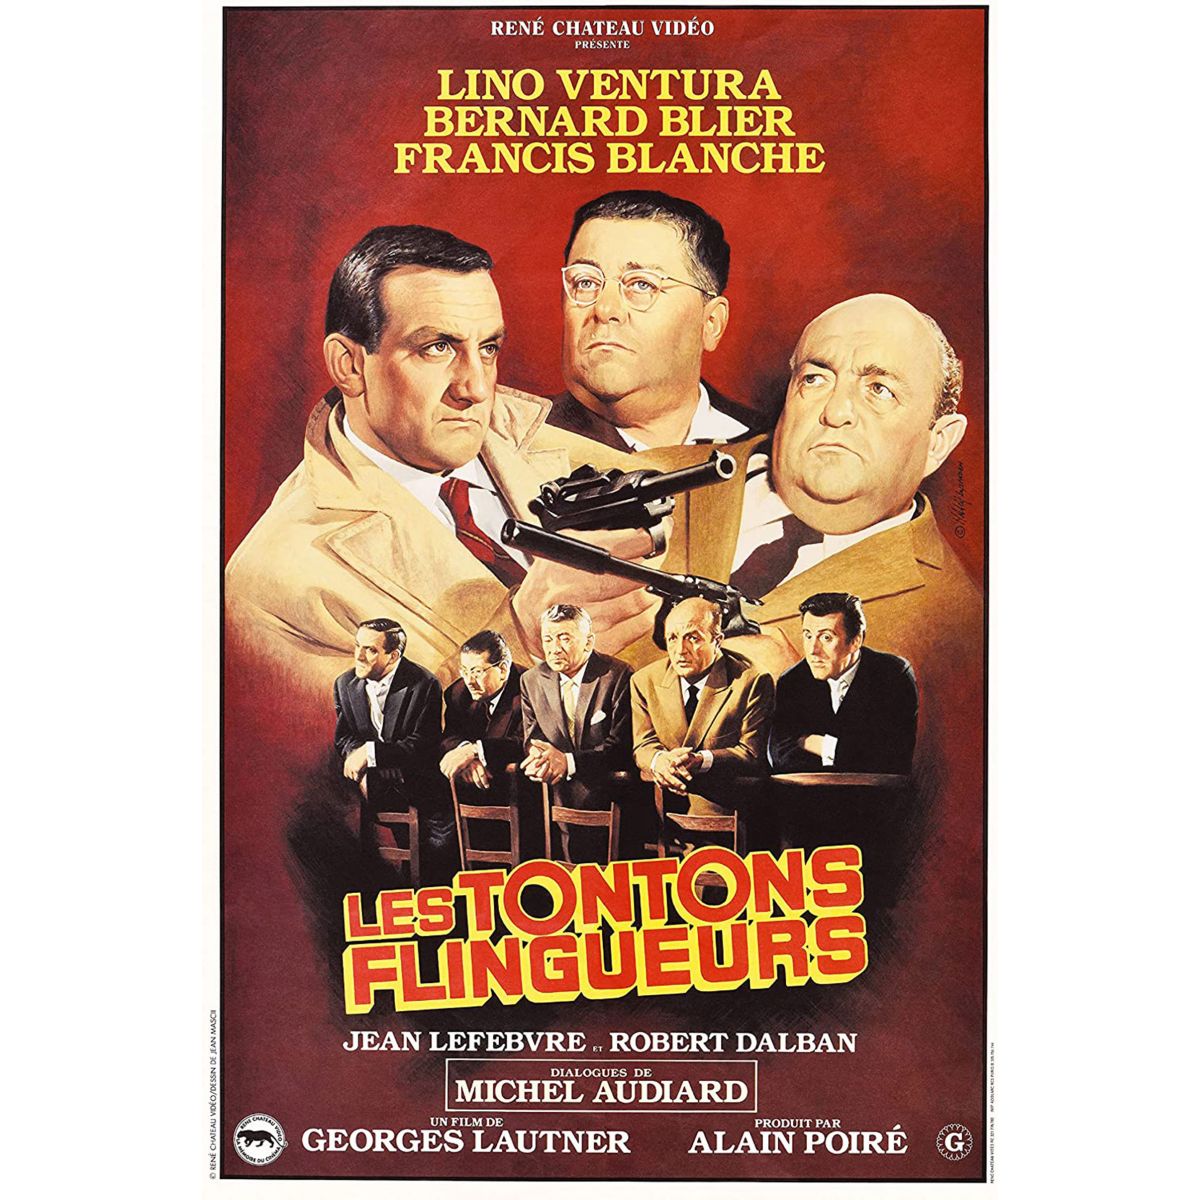 Lino Ventura dans le film Les Tontons flingueurs en 1963 - Photo et Tableau  - Editions Limitées - Achat / Vente